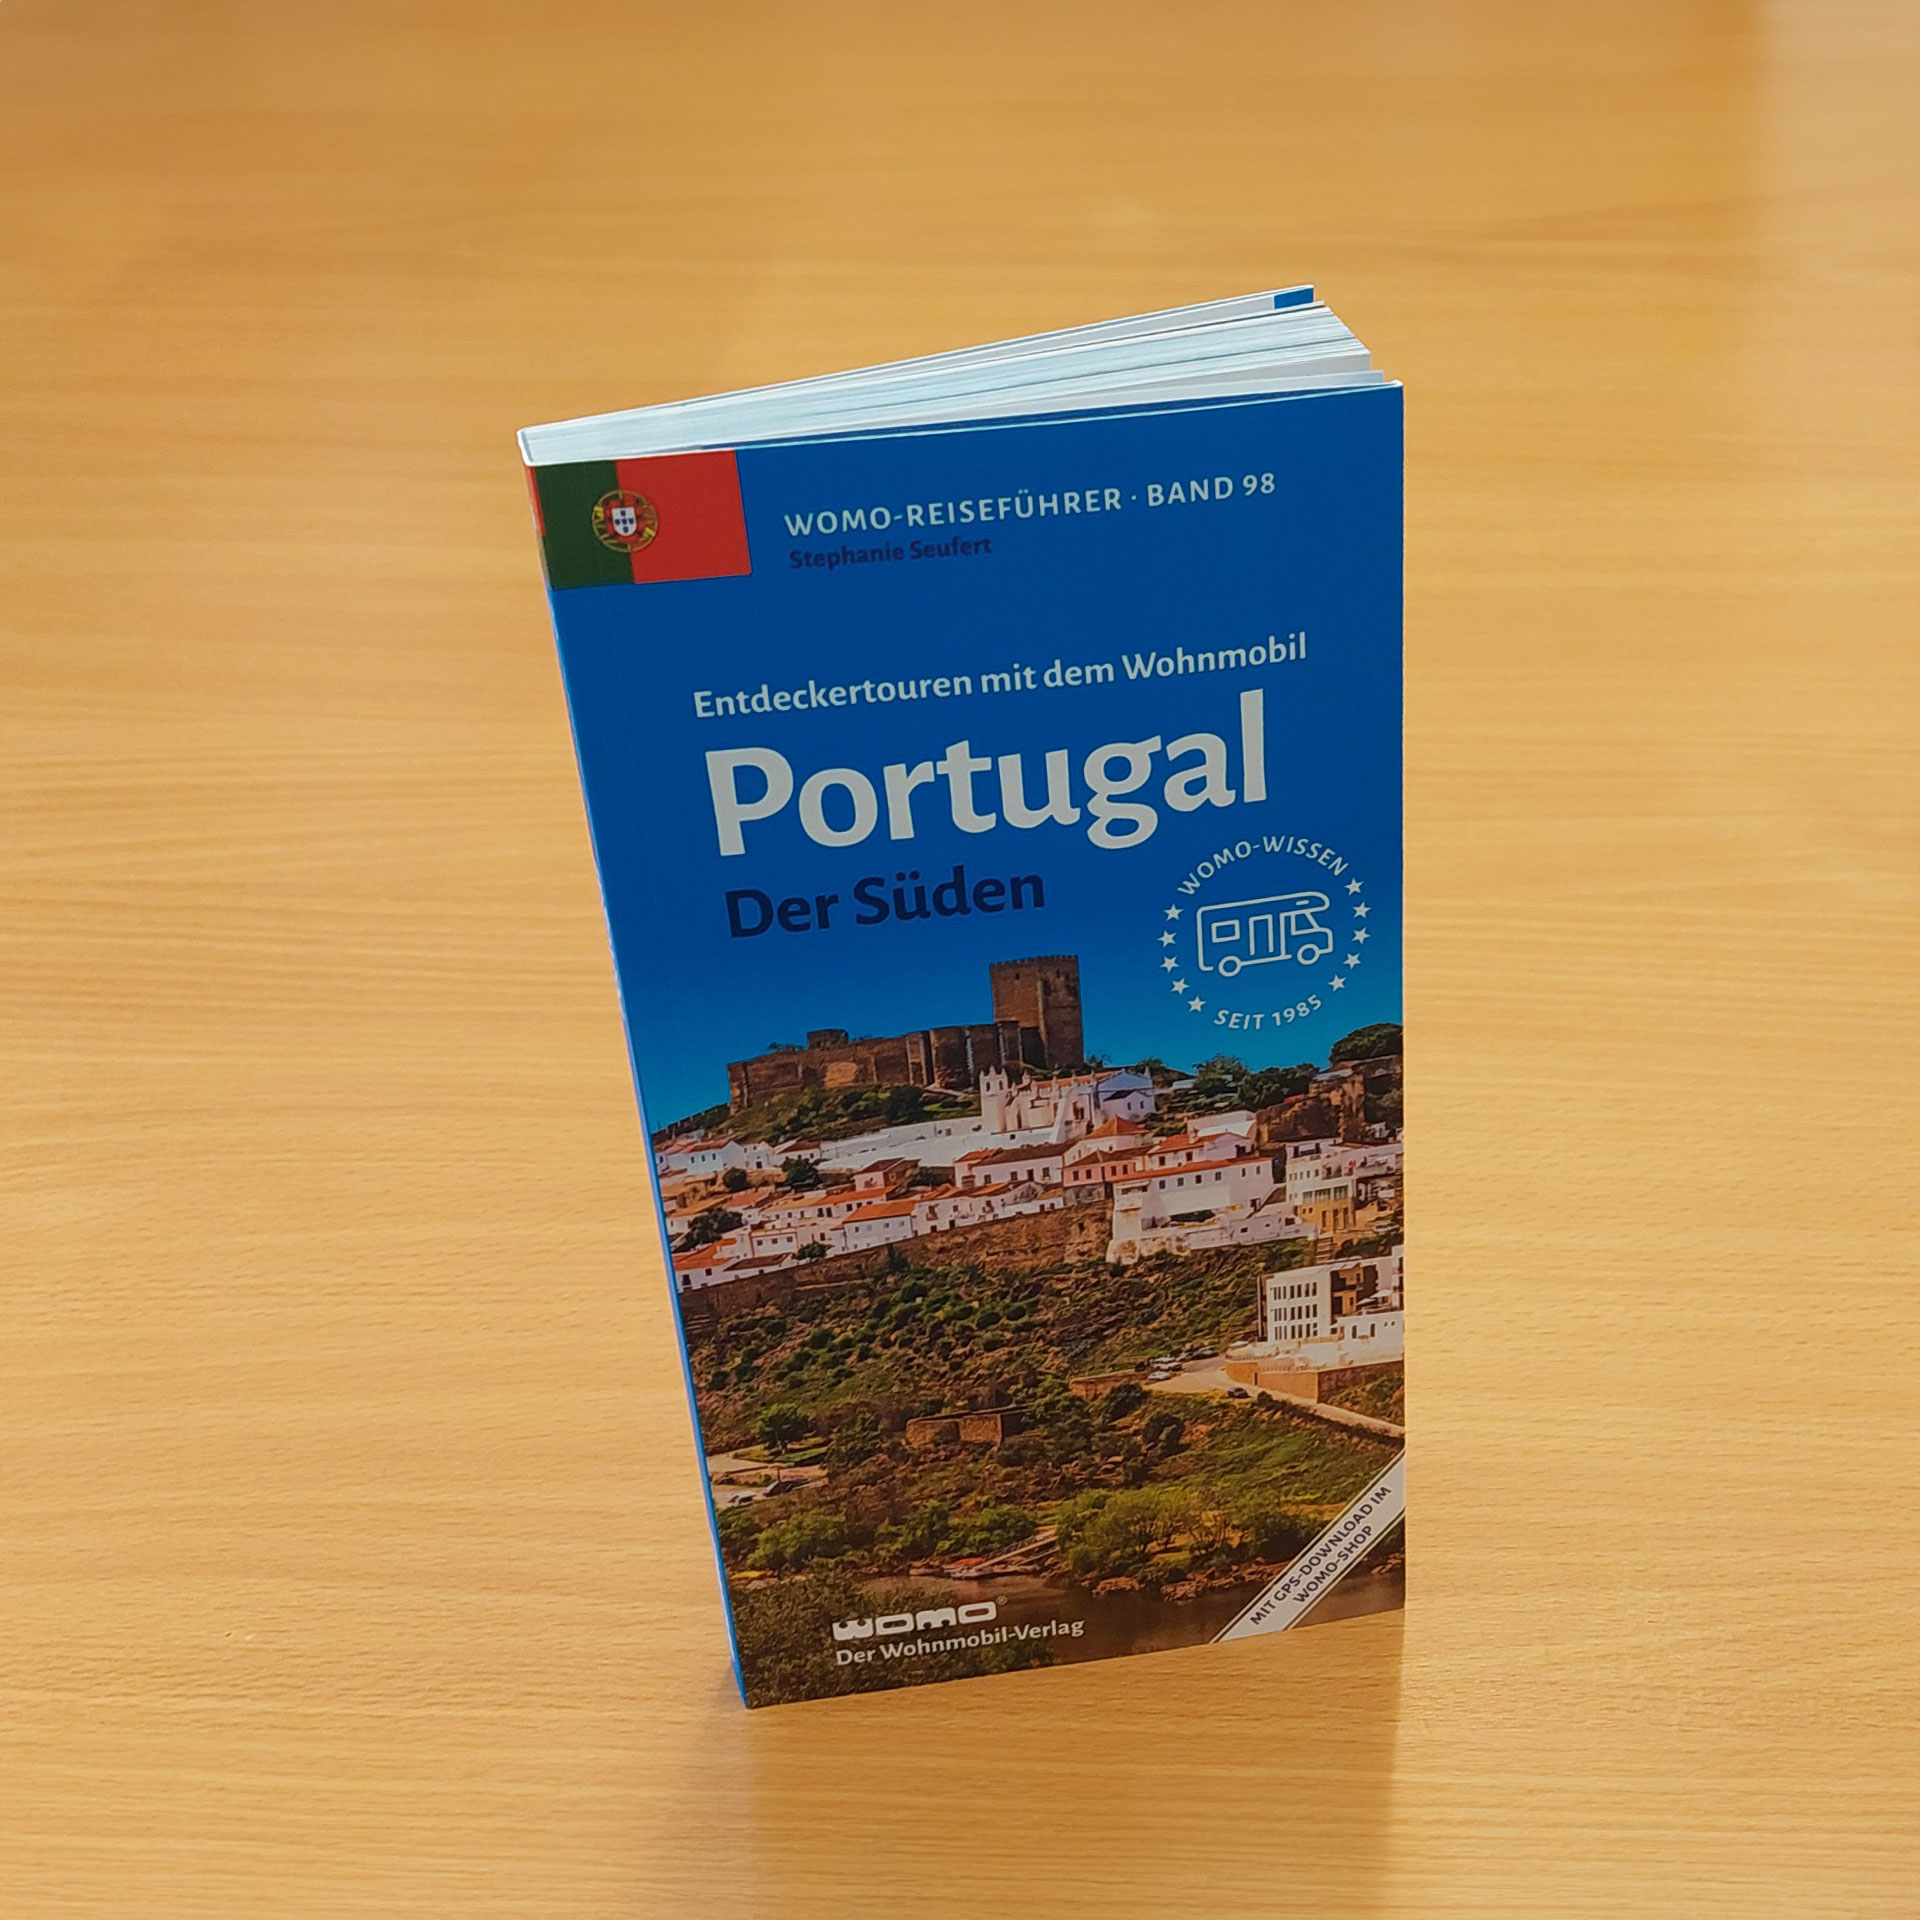 98: Entdeckertouren mit dem Wohnmobil - Portugal - Der Süden